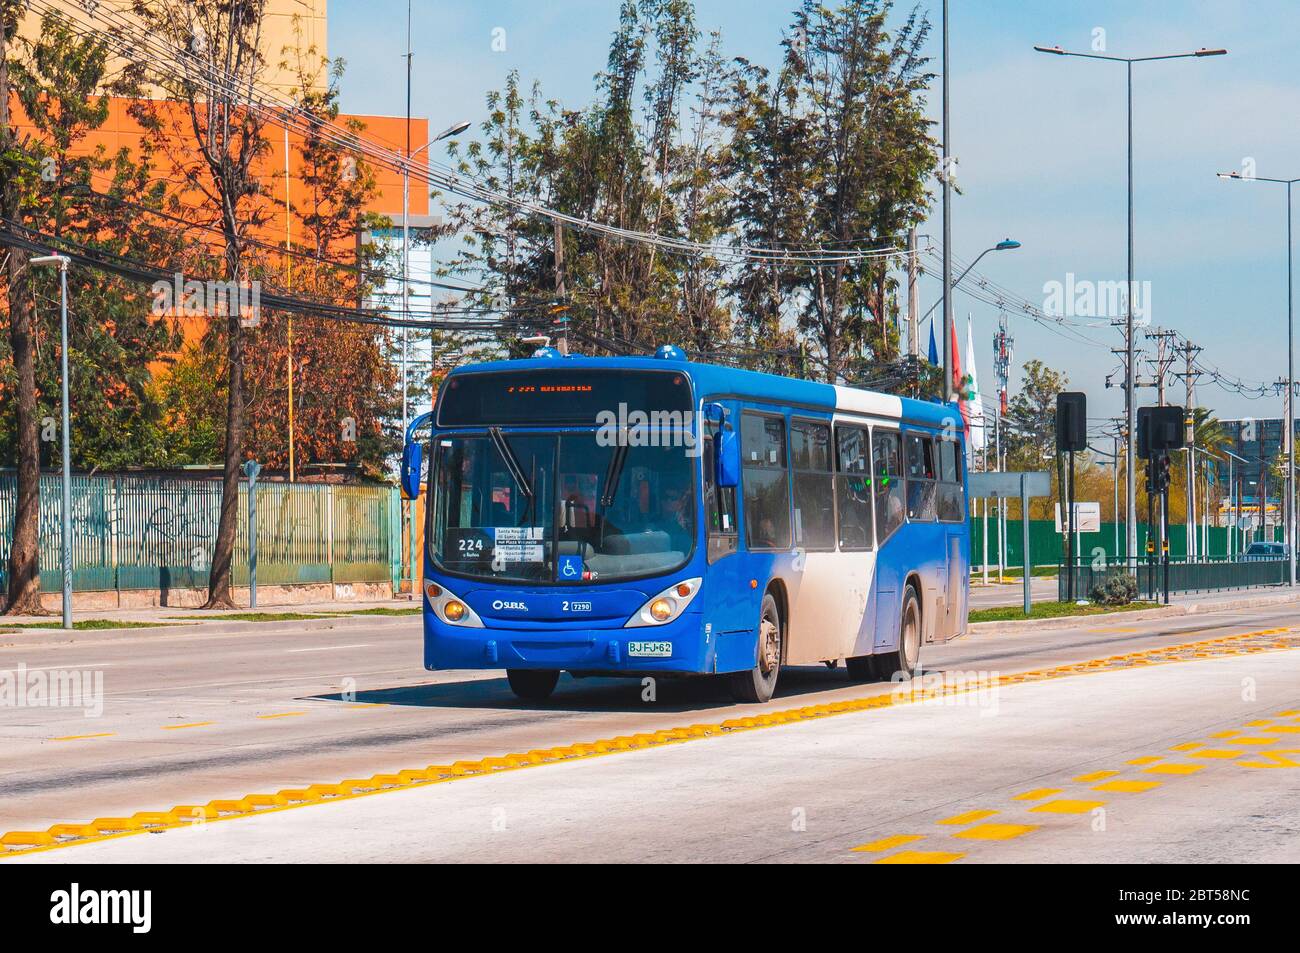 SANTIAGO, CHILE - OCTOBER 2015: A Transantiago bus in Santiago Stock Photo